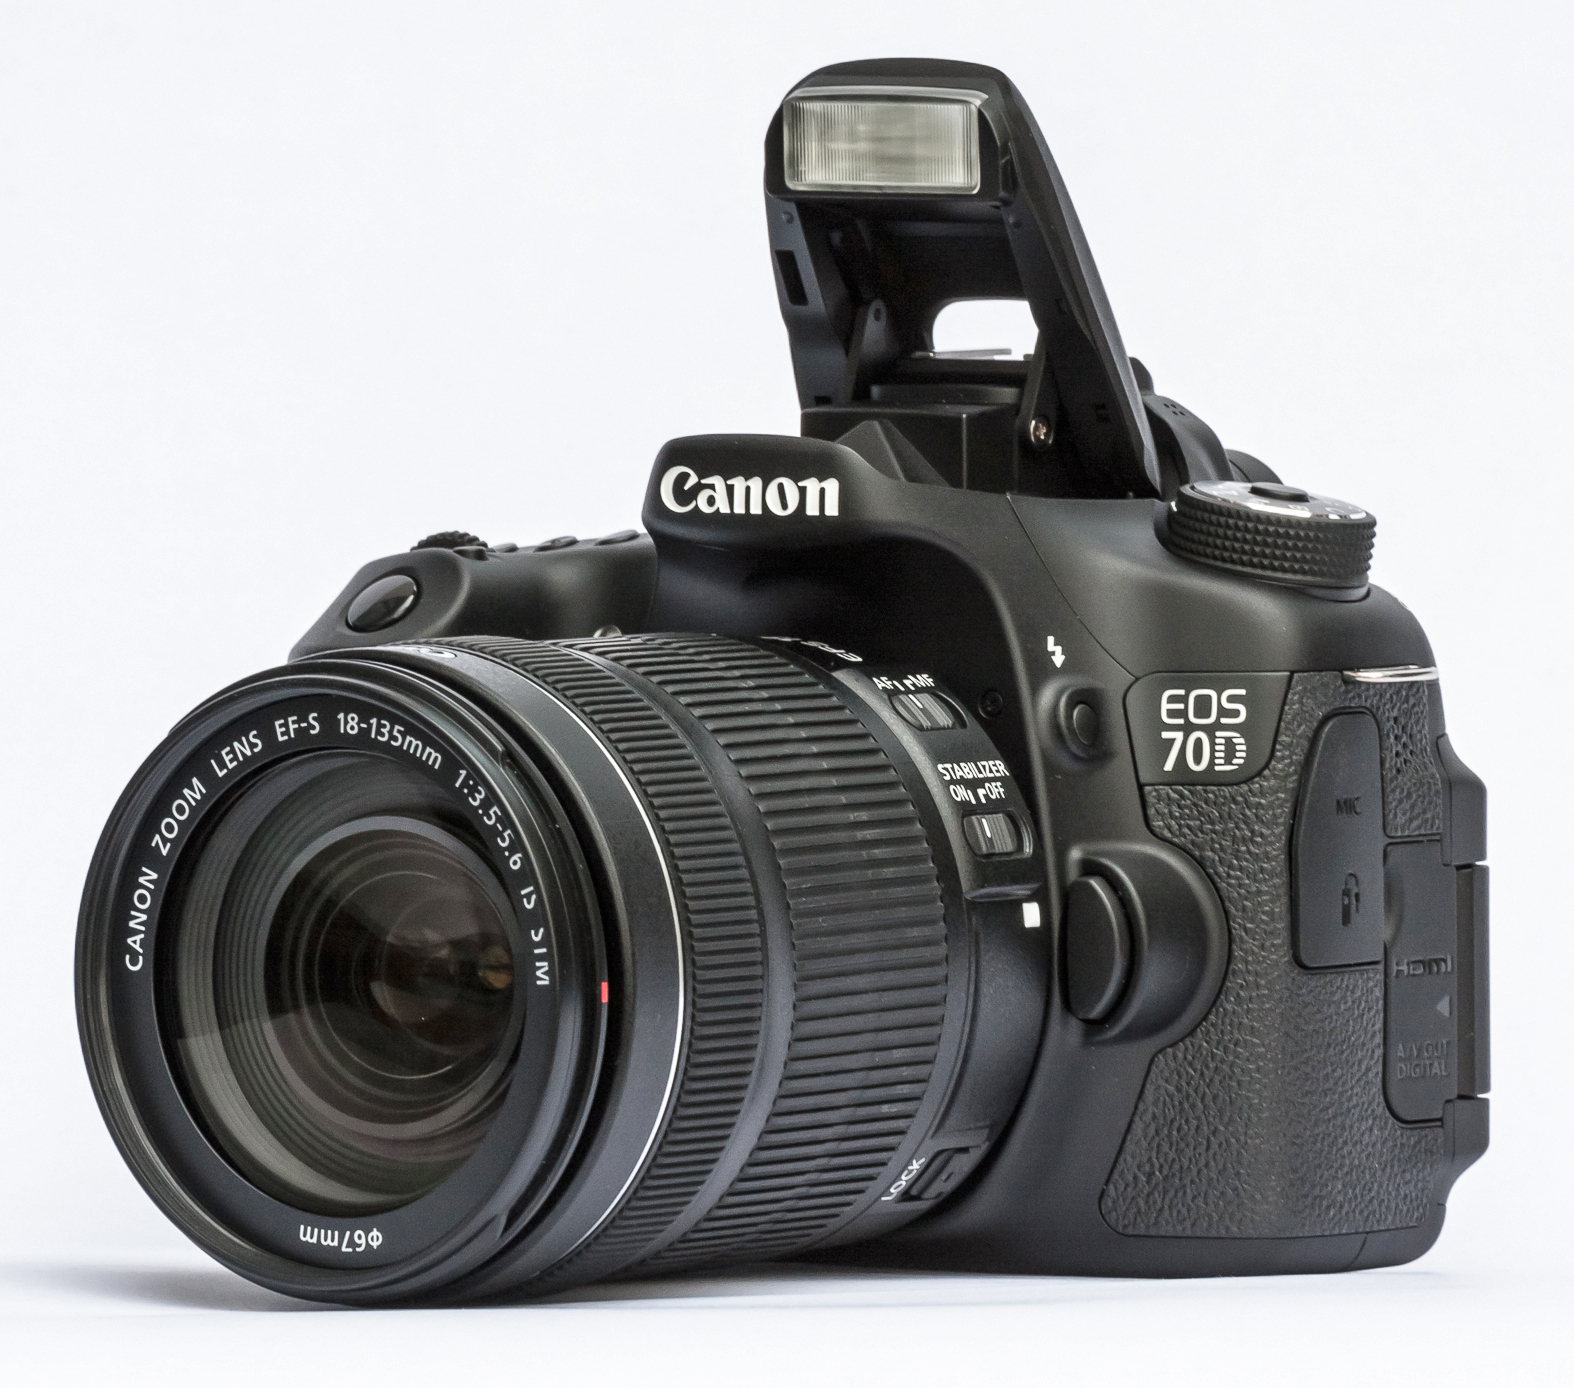 Mẫu máy ảnh giá rẻ sở hữu nhiều tính năng vượt trội của Canon